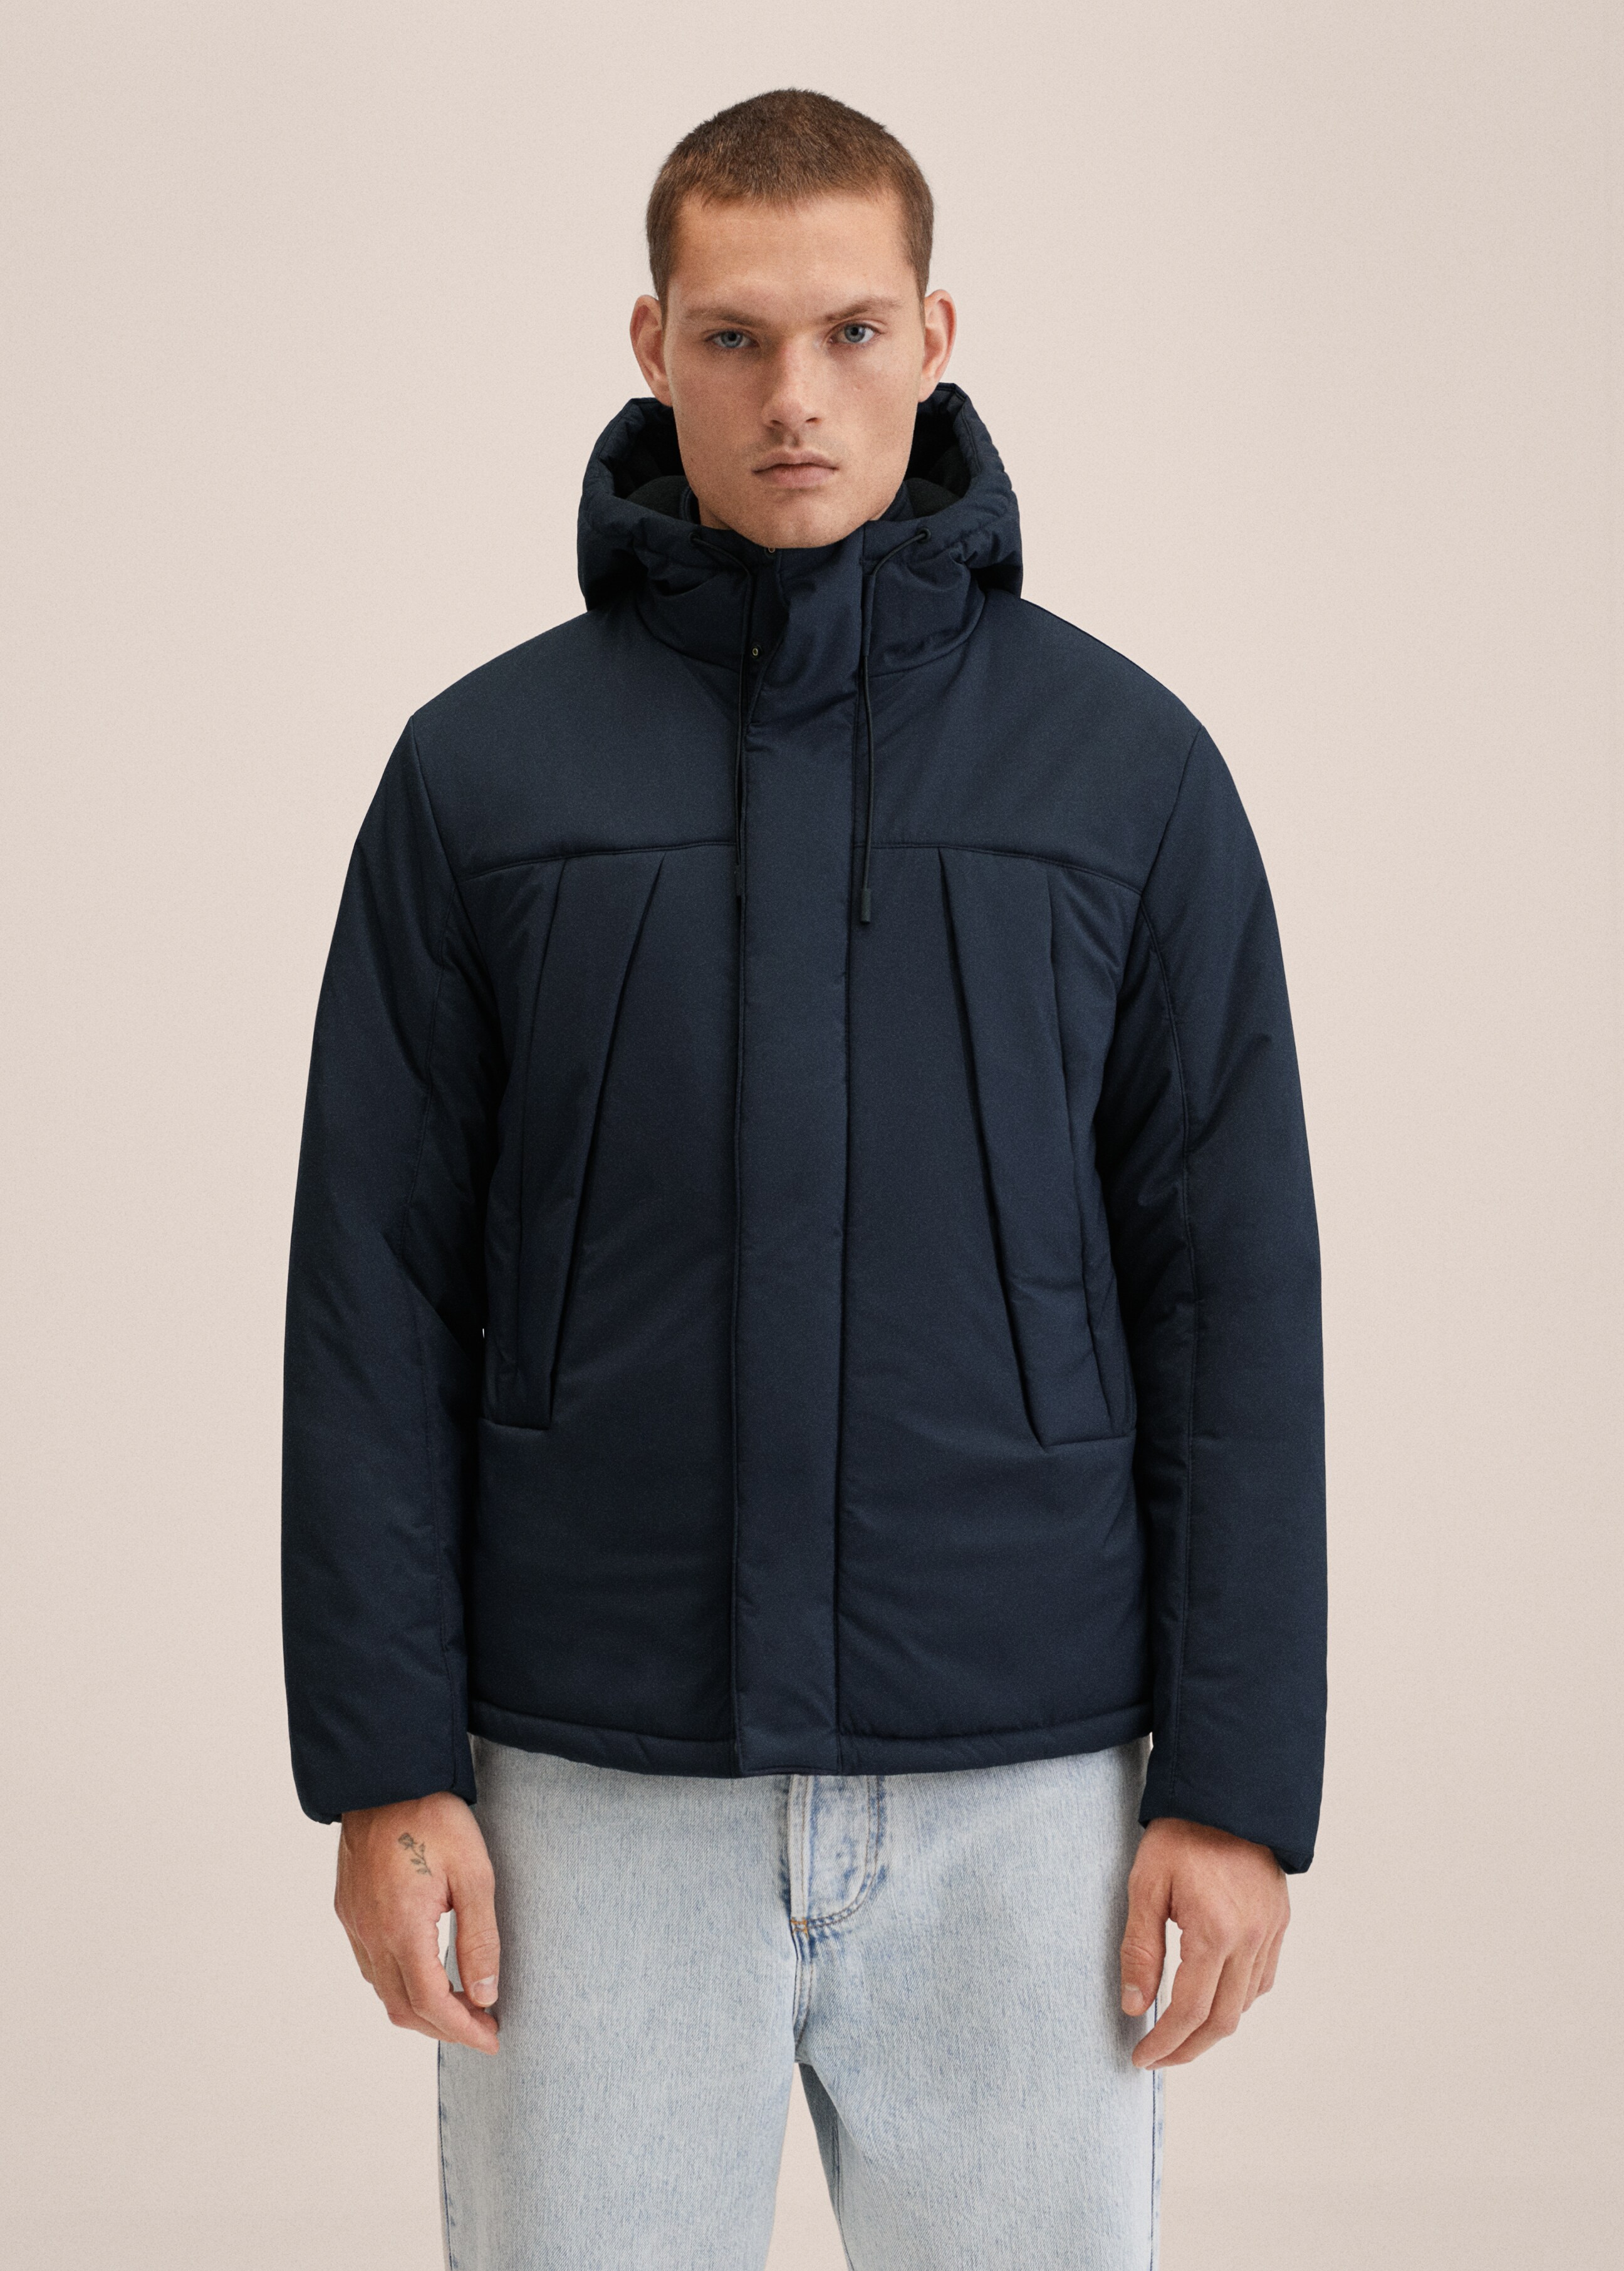 Pockets hooded coat - Medium plane